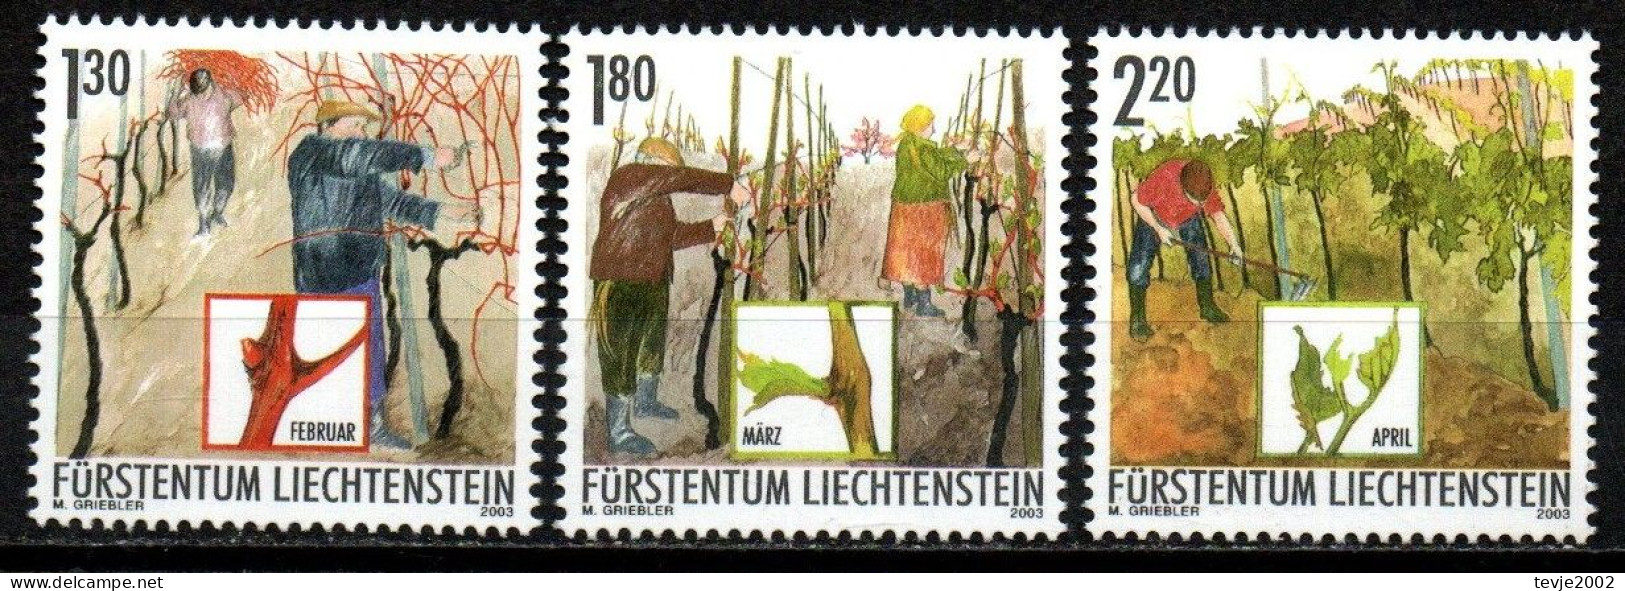 Liechtenstein 2003 - Mi.Nr. 1311 - 1313 - Postfrisch MNH - Weinbau Winzer Wine Growing Winemaker - Agriculture